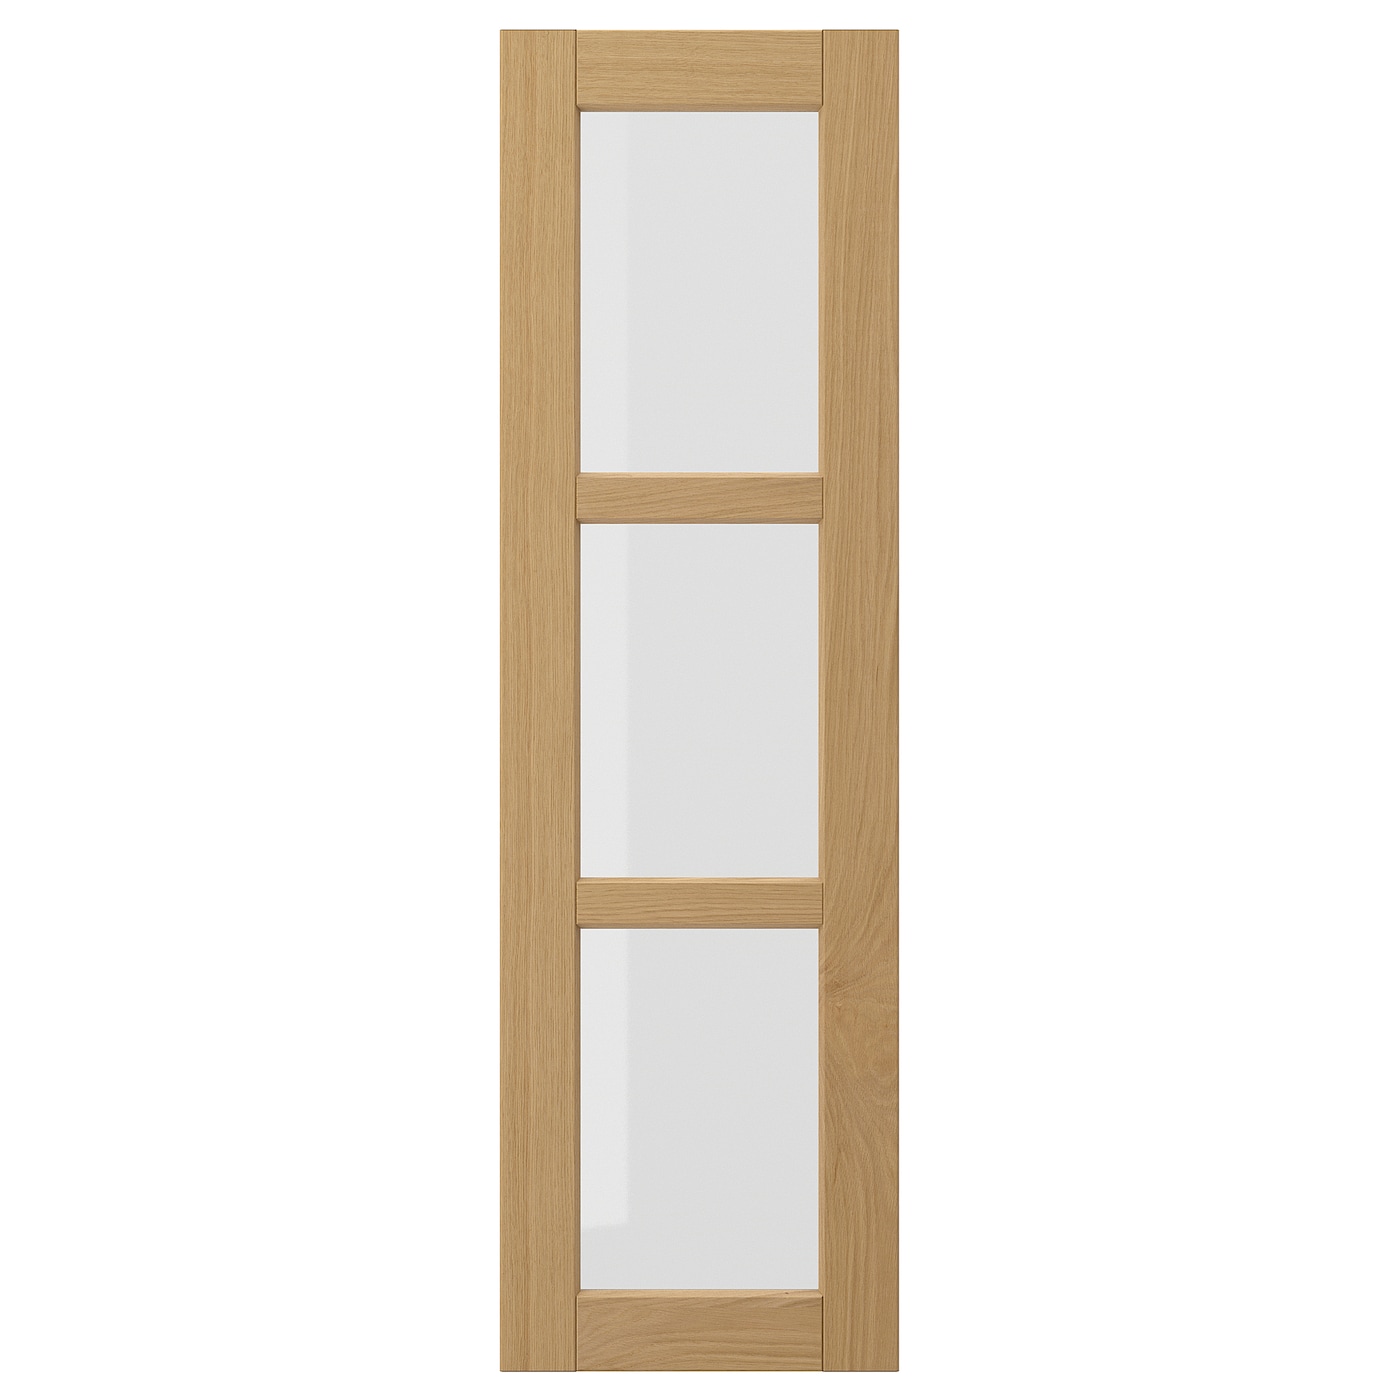 Стеклянная дверь - IKEA FORSBACKA/ФОРСБАКА ИКЕА, 100х30 см, светло-коричневый